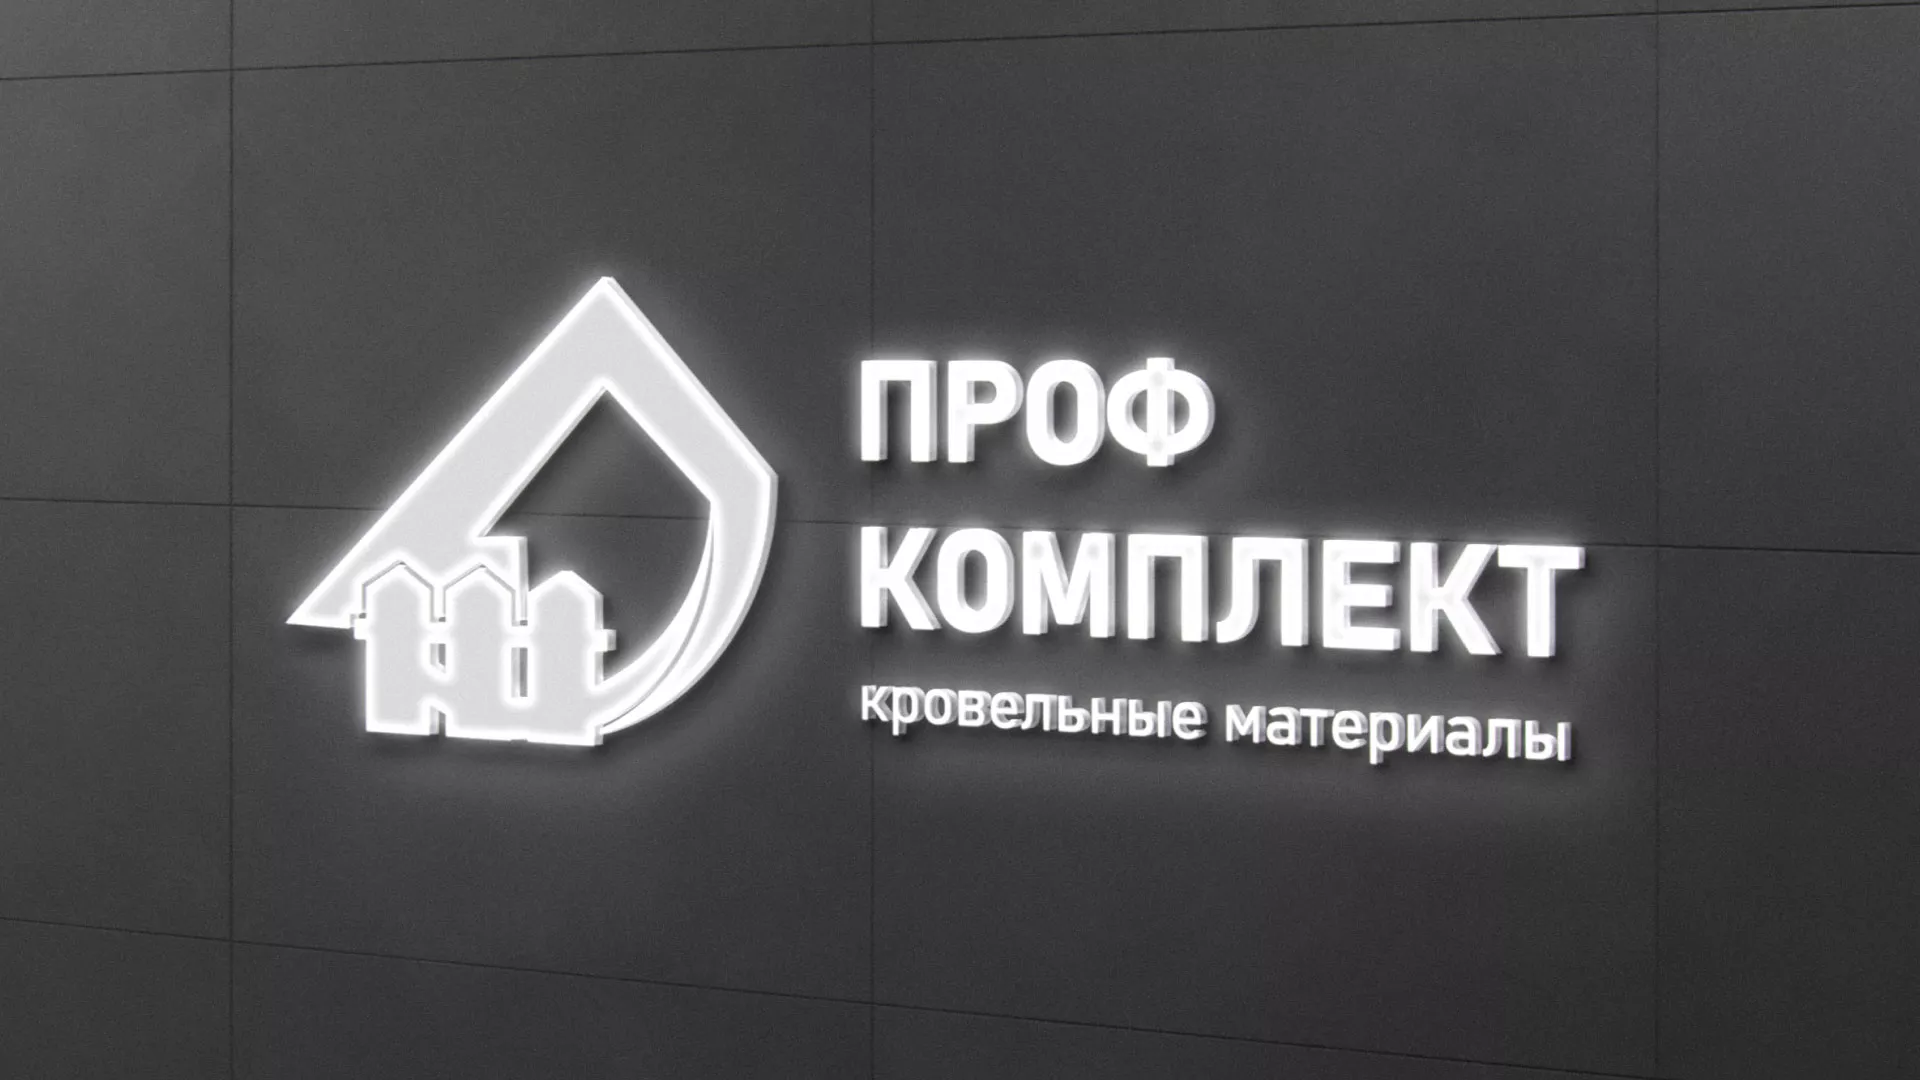 Разработка логотипа «Проф Комплект» в Одинцово